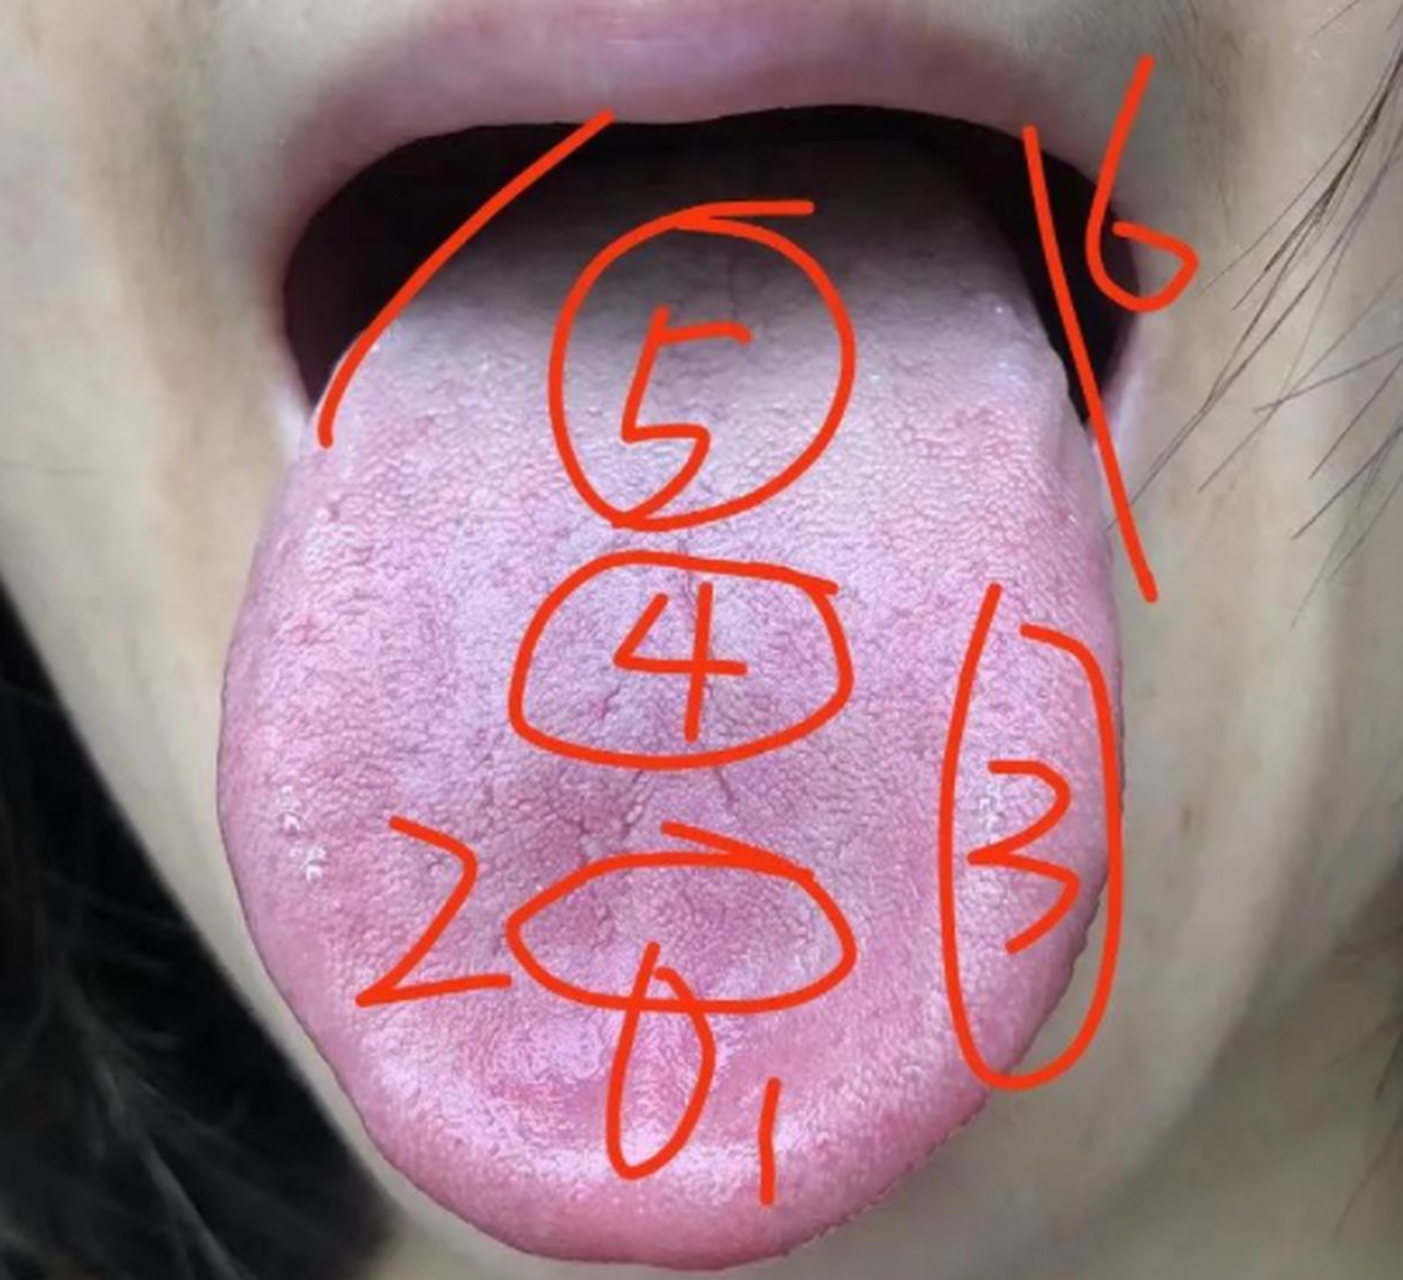 阴虚和血瘀舌像的区别 这个舌像在舌前看似舌淡红苔薄,是阴虚的舌像.